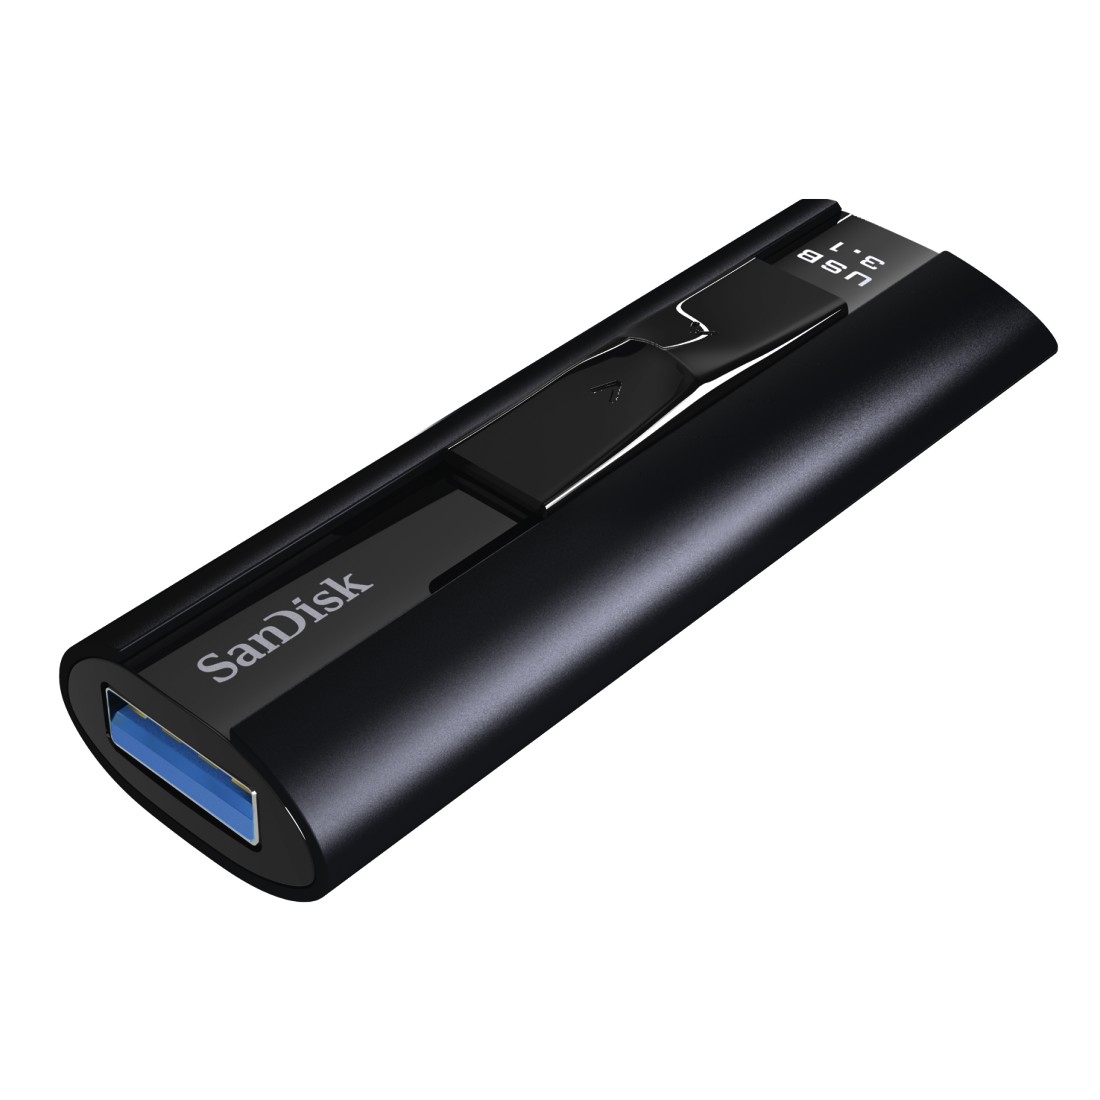 USB klíč SanDisk Extreme Pro SSD, 256GB, USB 3.1-rychlost 420/380MB/s (SDCZ880-256G-G46)